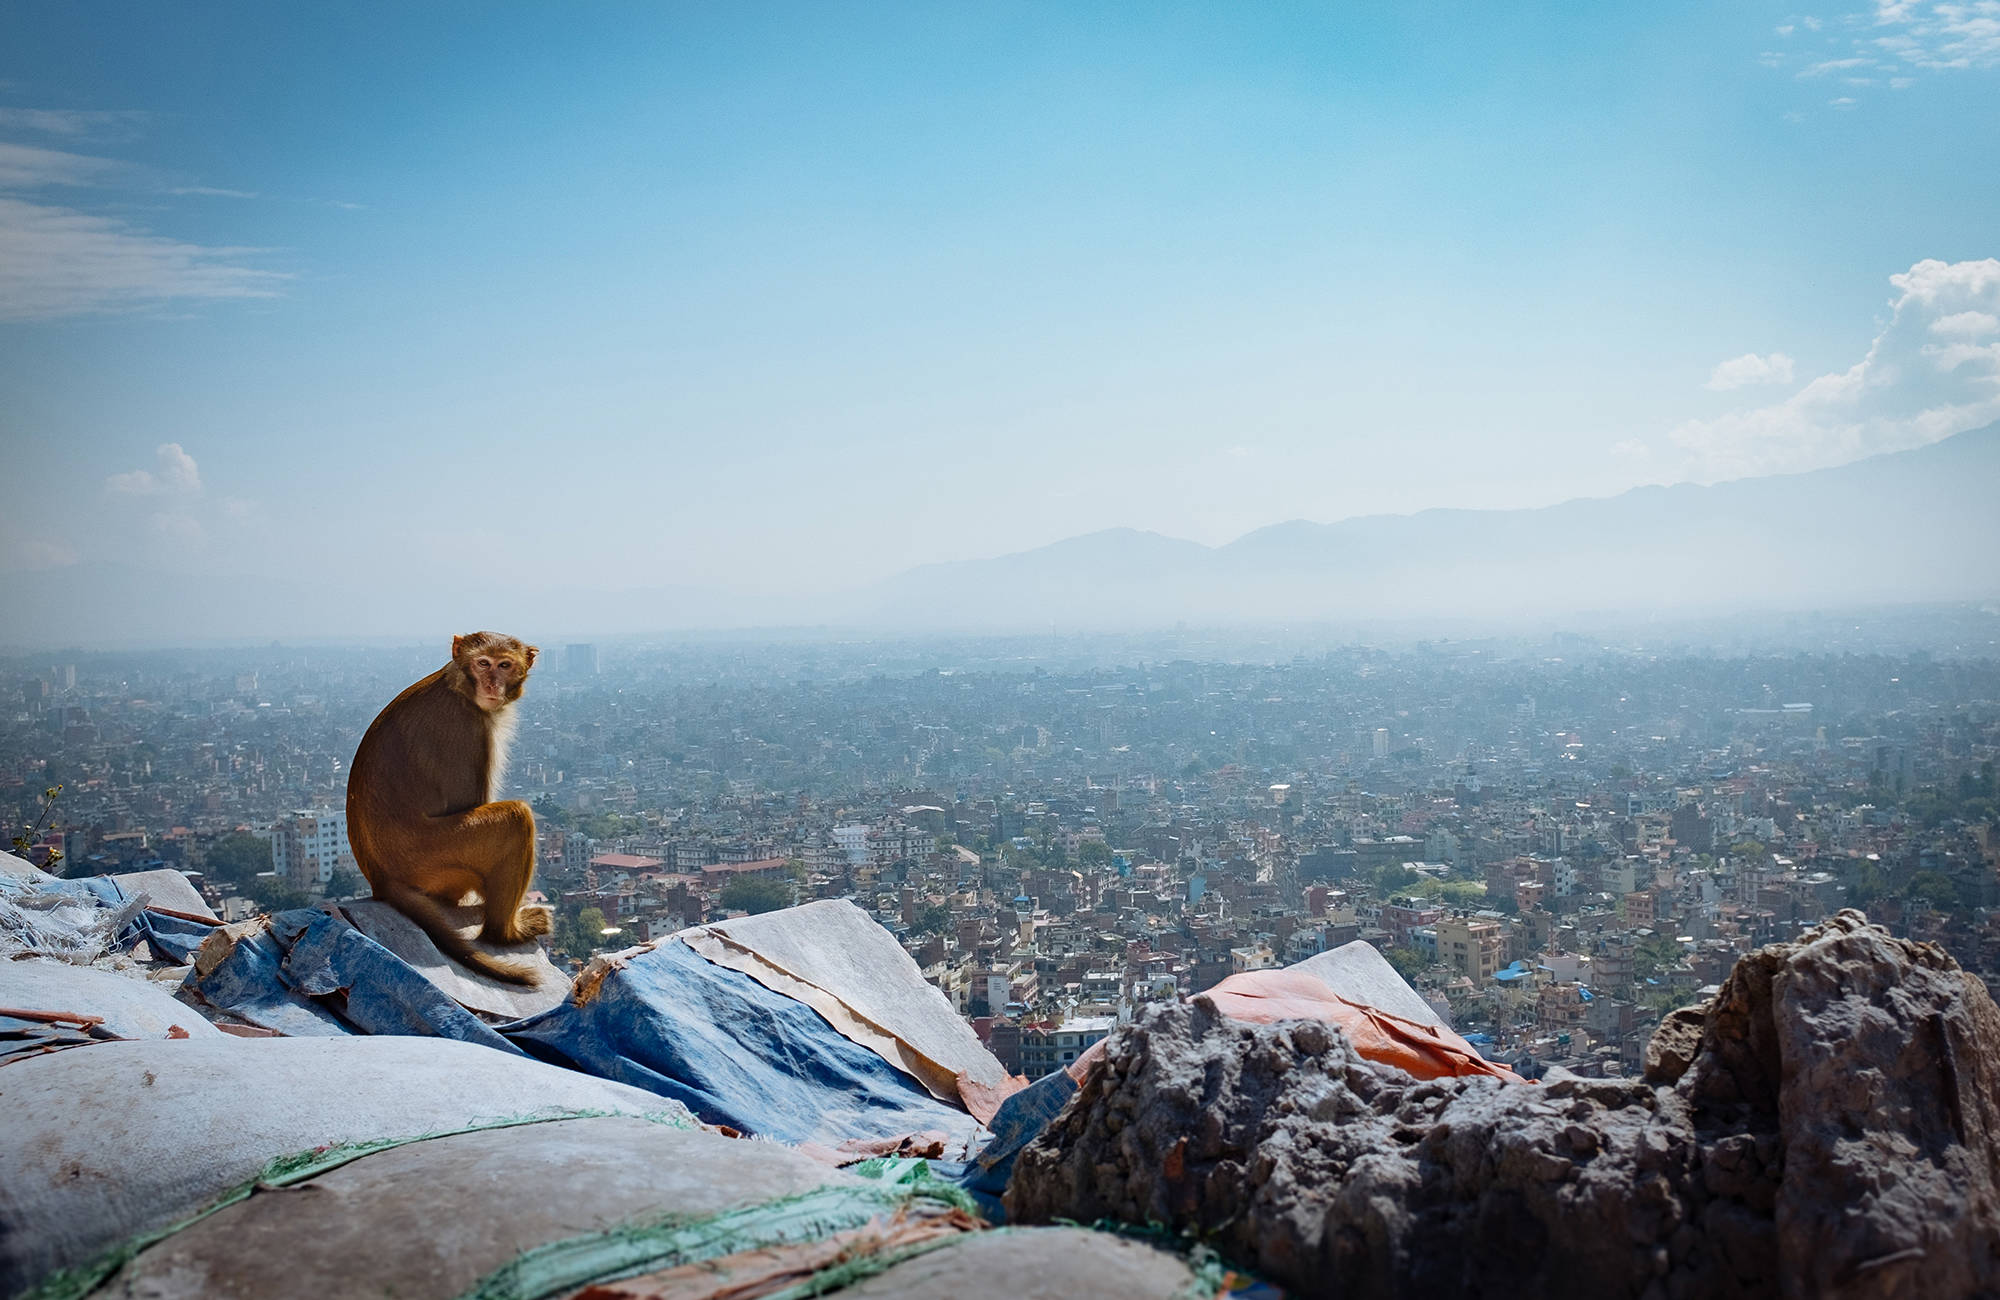 Nyd udsigten over kathmandu når du rejser til Nepal